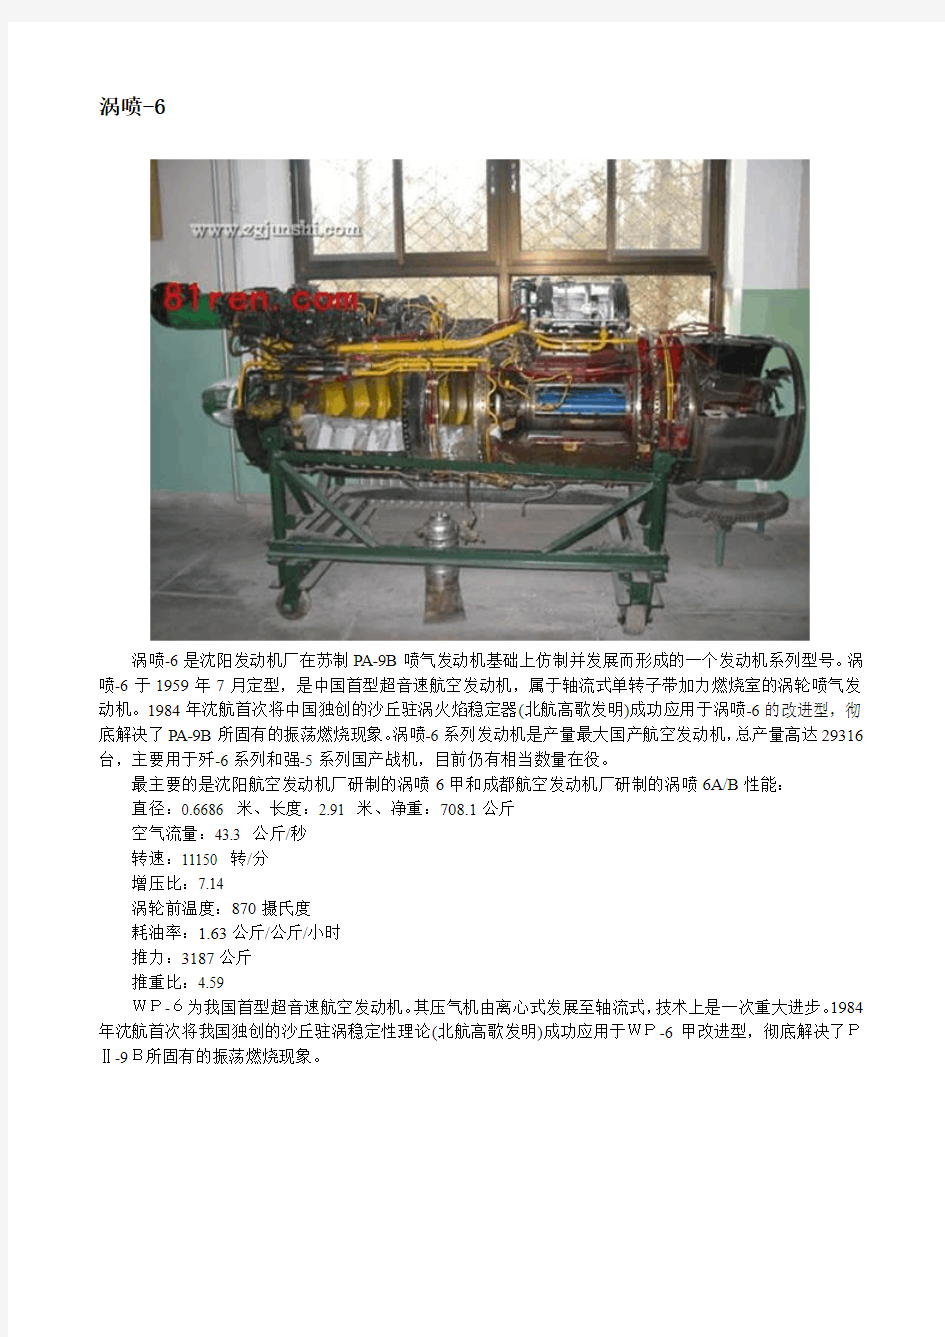 中国全部国产航空发动机的型号及参数